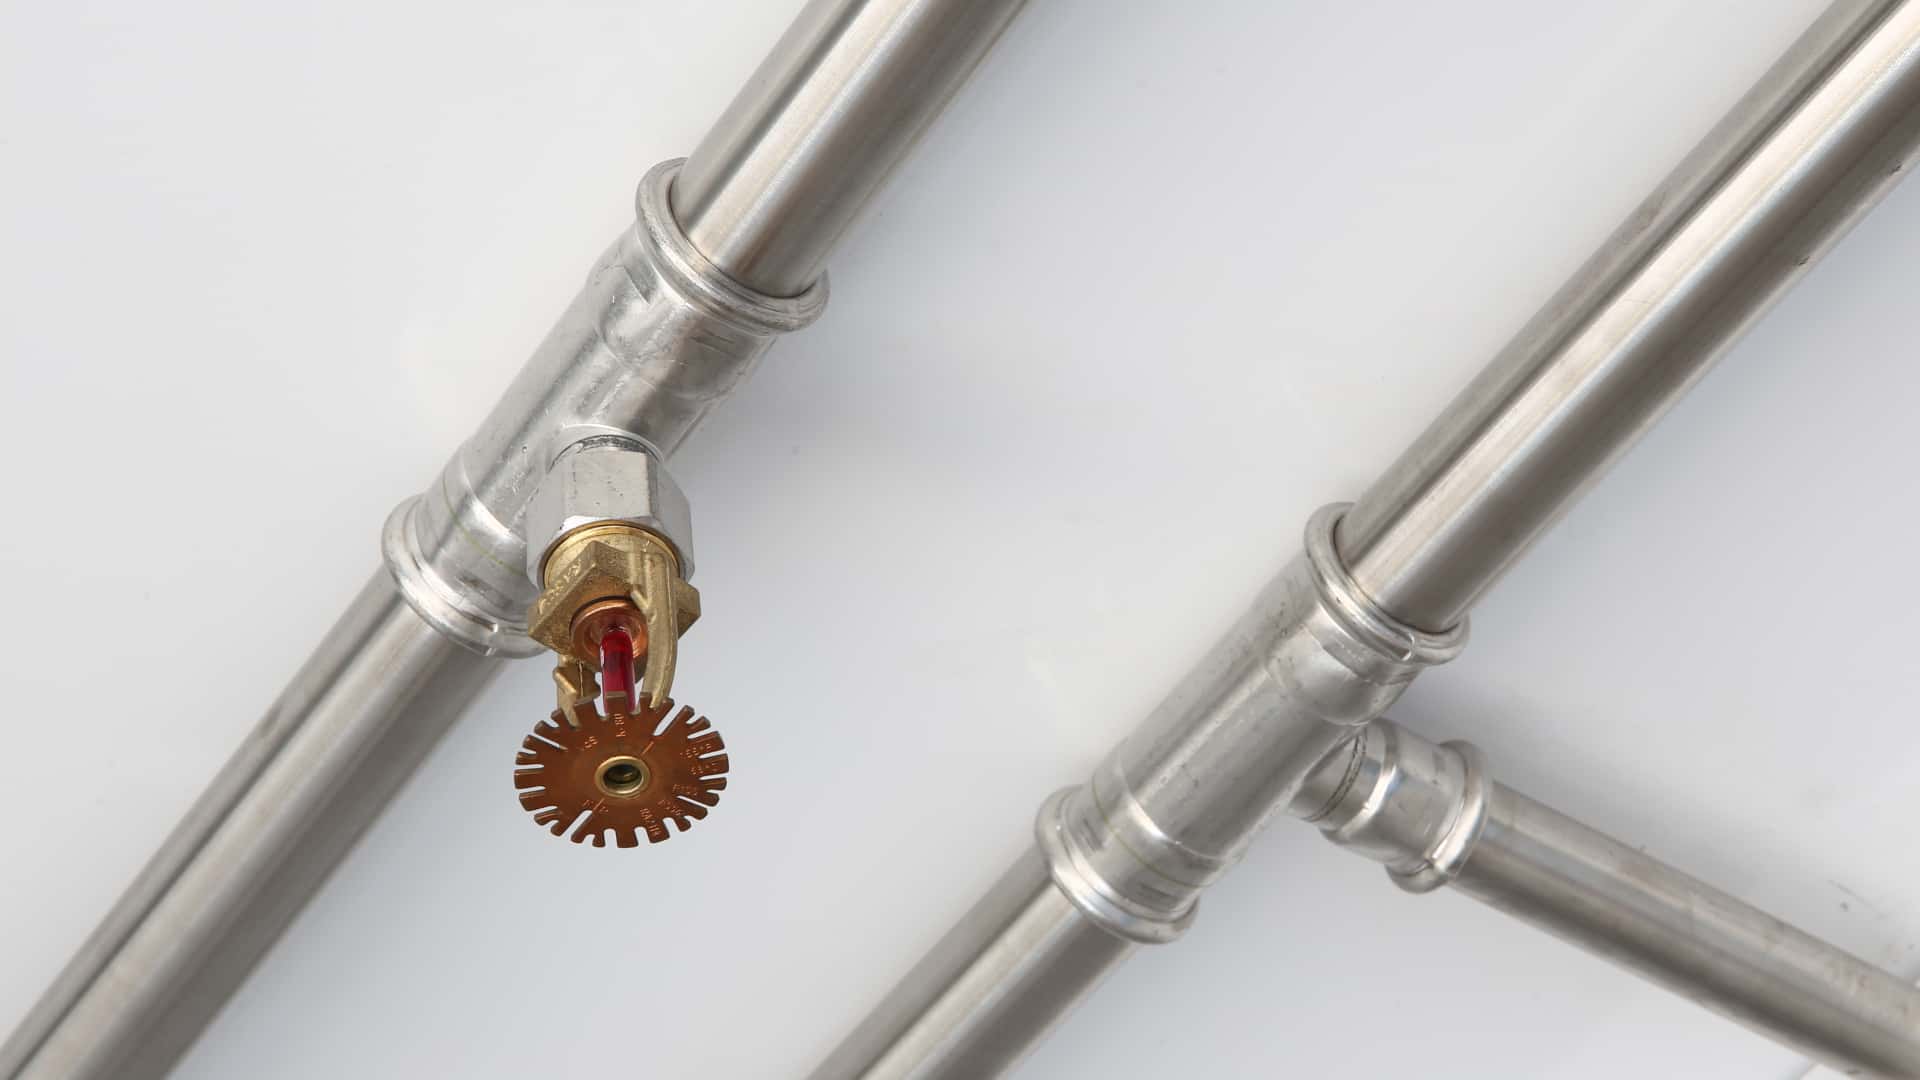 KAN-therm — Sistēma Sprinkler Steel — Oglekļa tērauda caurules tiek klasificētas kā neuzliesmojoši materiāli, kas pieder pie kategorijas A atbilstoši standartam DIN 4102